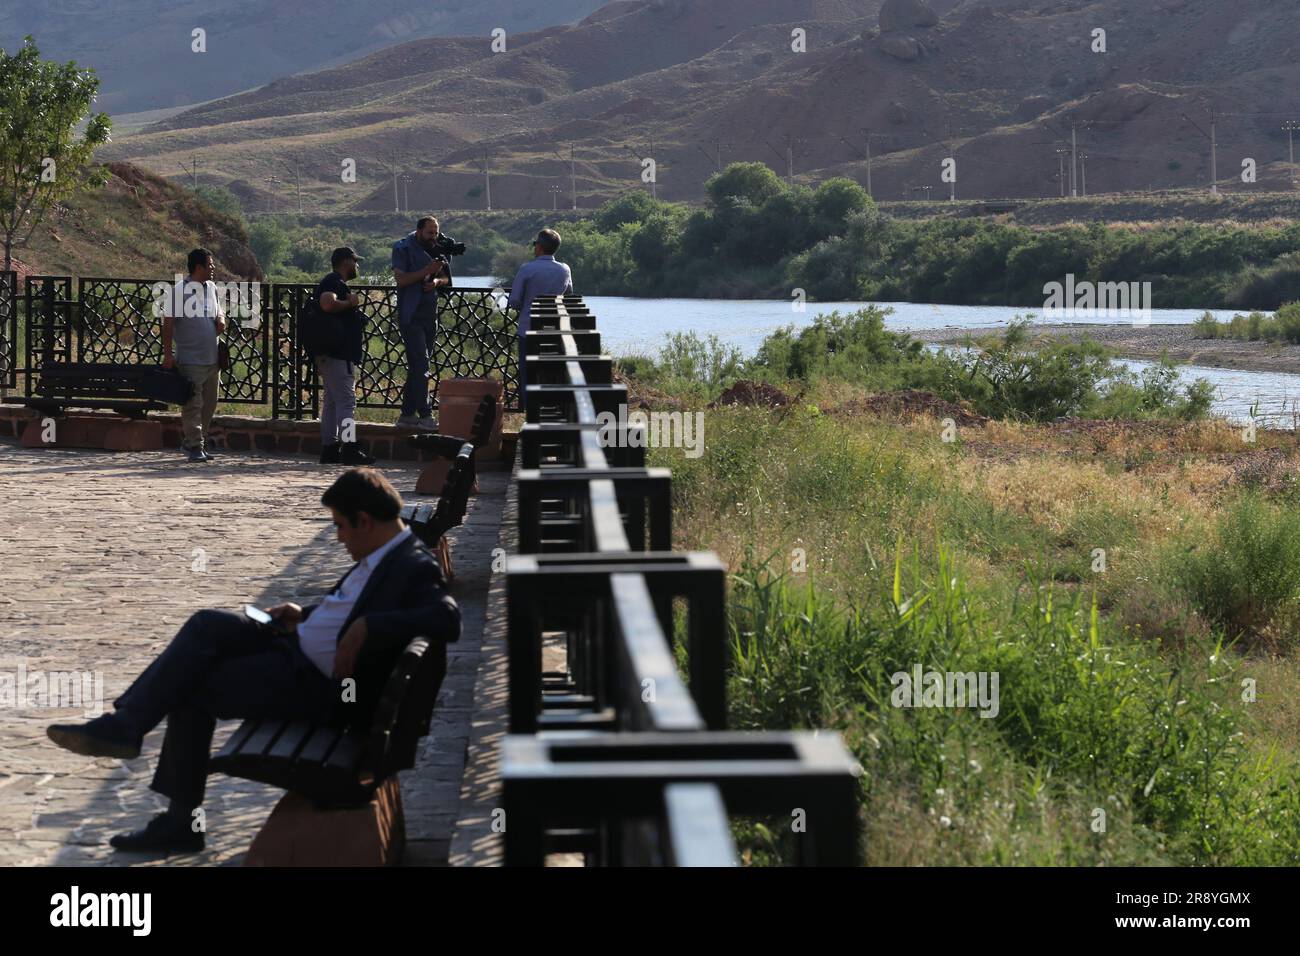 21 de junio de 2023, Jolfa, Azerbaiyán Oriental, Irán: La gente está cerca del río Aras en la frontera entre el noroeste de Irán y Azerbaiyán. El Aras (los Araks, Arax, Araxes, o Araz) es un río en el Cáucaso. Se levanta en el este de Turquía y fluye a lo largo de las fronteras entre Turquía y Armenia, entre Turquía y el exclave de Najicheván de Azerbaiyán, entre Irán y Azerbaiyán y Armenia, y, finalmente, a través de Azerbaiyán, donde desemboca en el río Kura. Drena el lado sur de las montañas del Cáucaso Menor, mientras que el Kura drena el lado norte del Cáucaso Menor. El total del río le Foto de stock